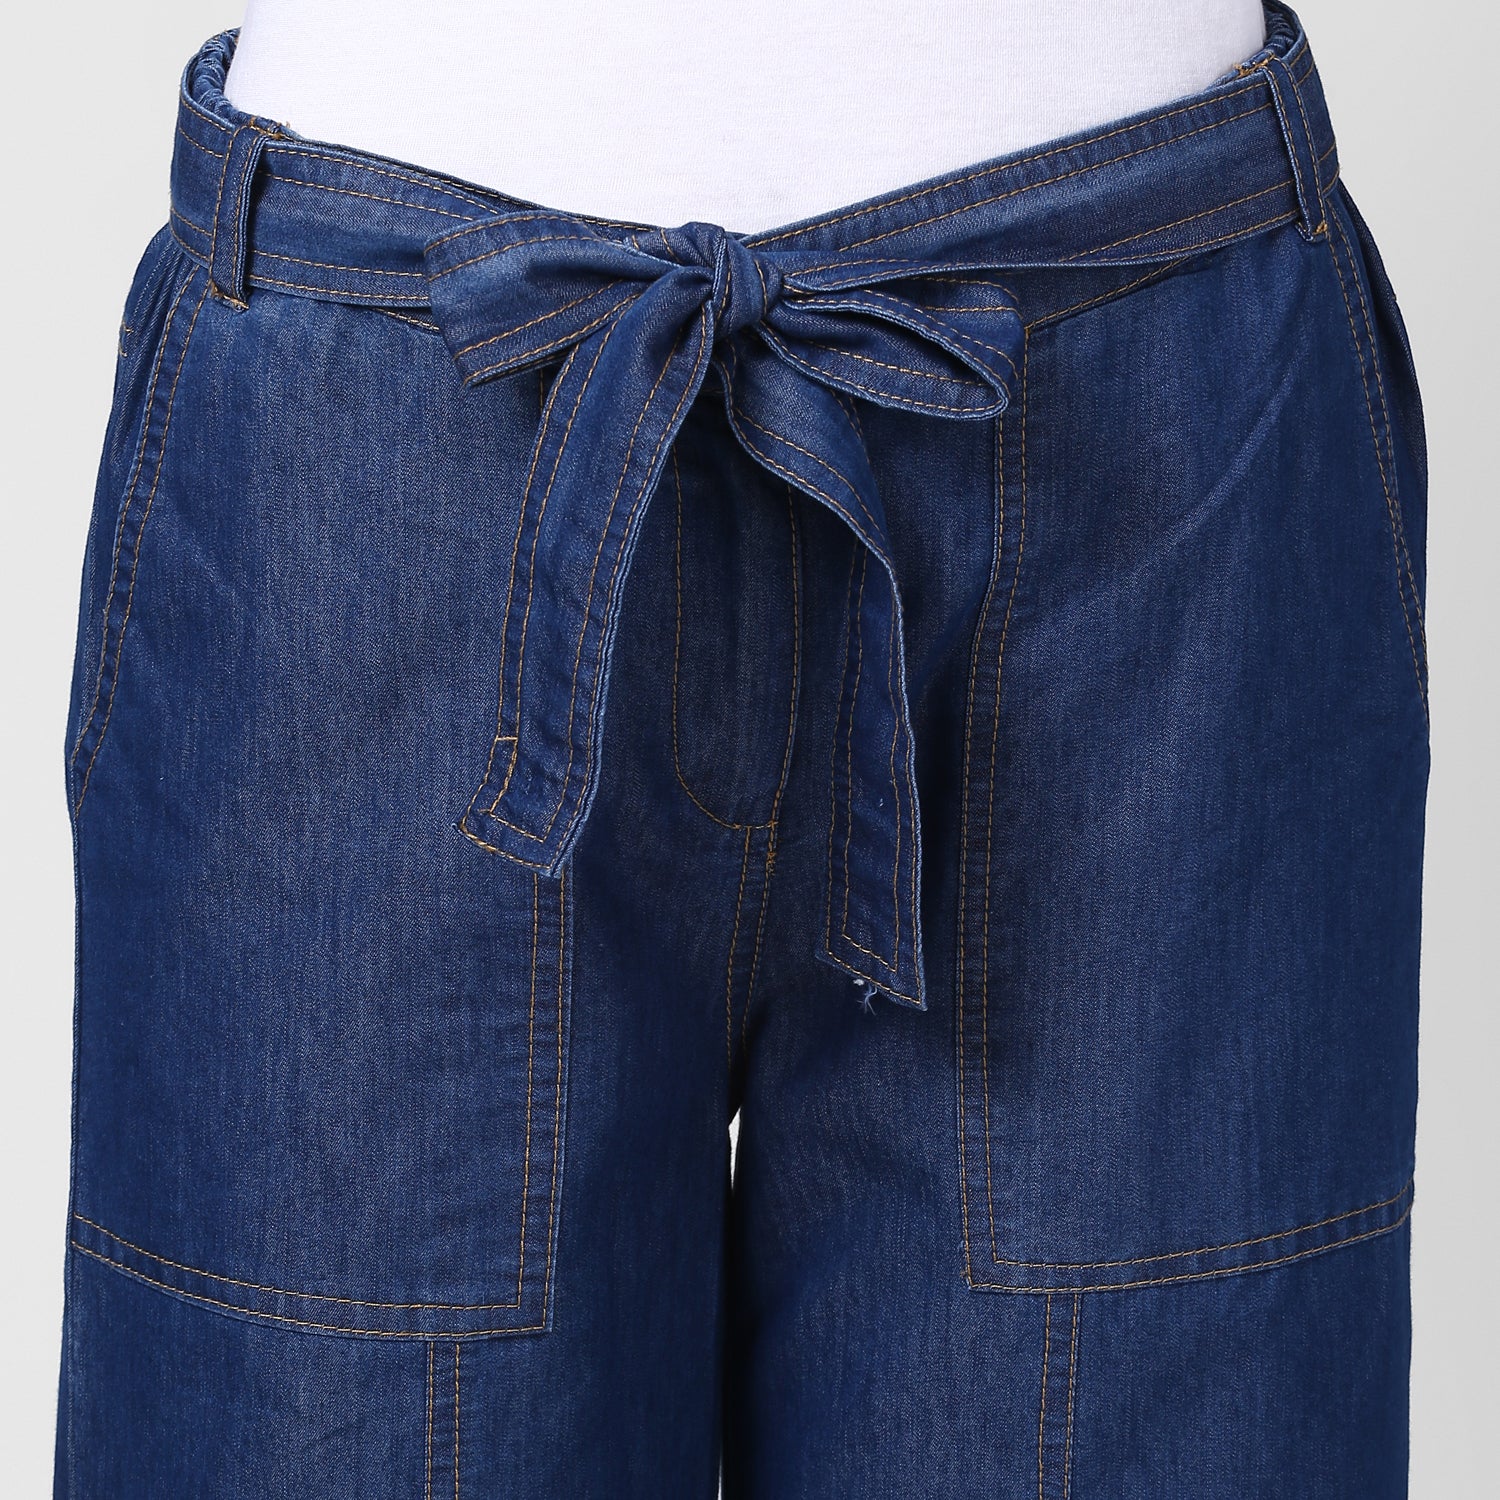 Women's Blue Denim Trousers with belt - StyleStone